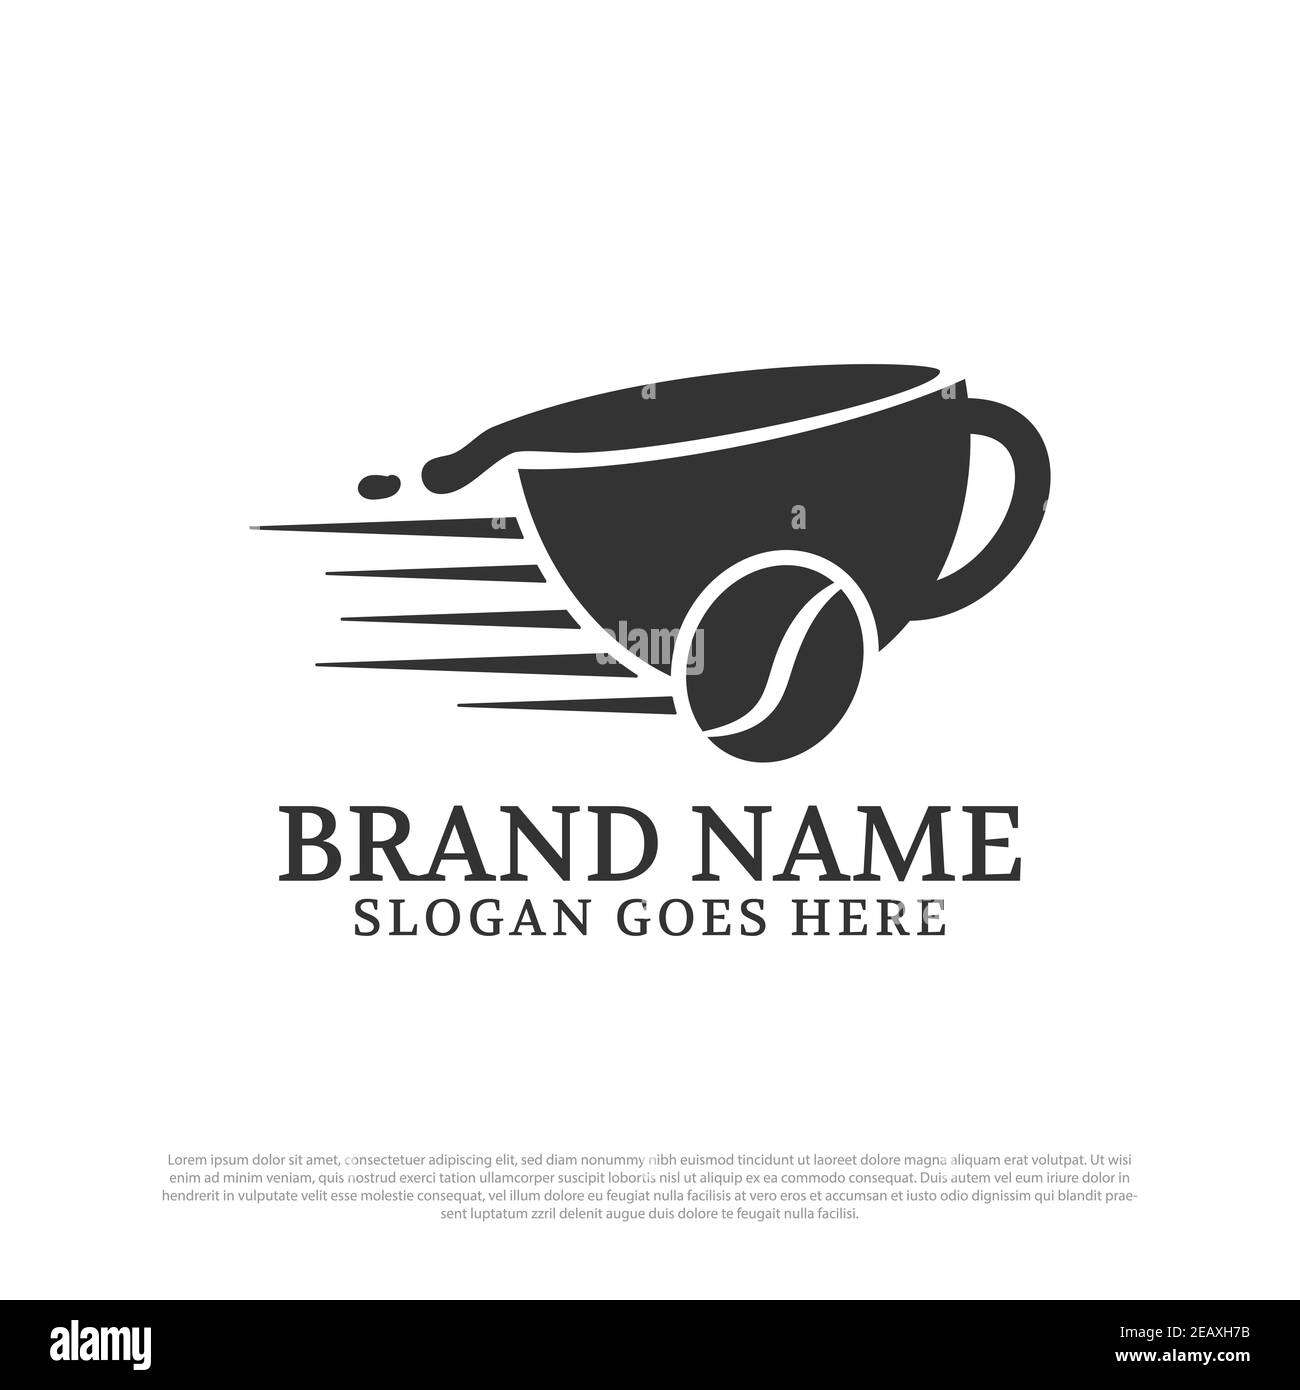 Café livraison logo inspiration, peut utiliser les concepts de la marque de café de nourriture et de boissons Illustration de Vecteur